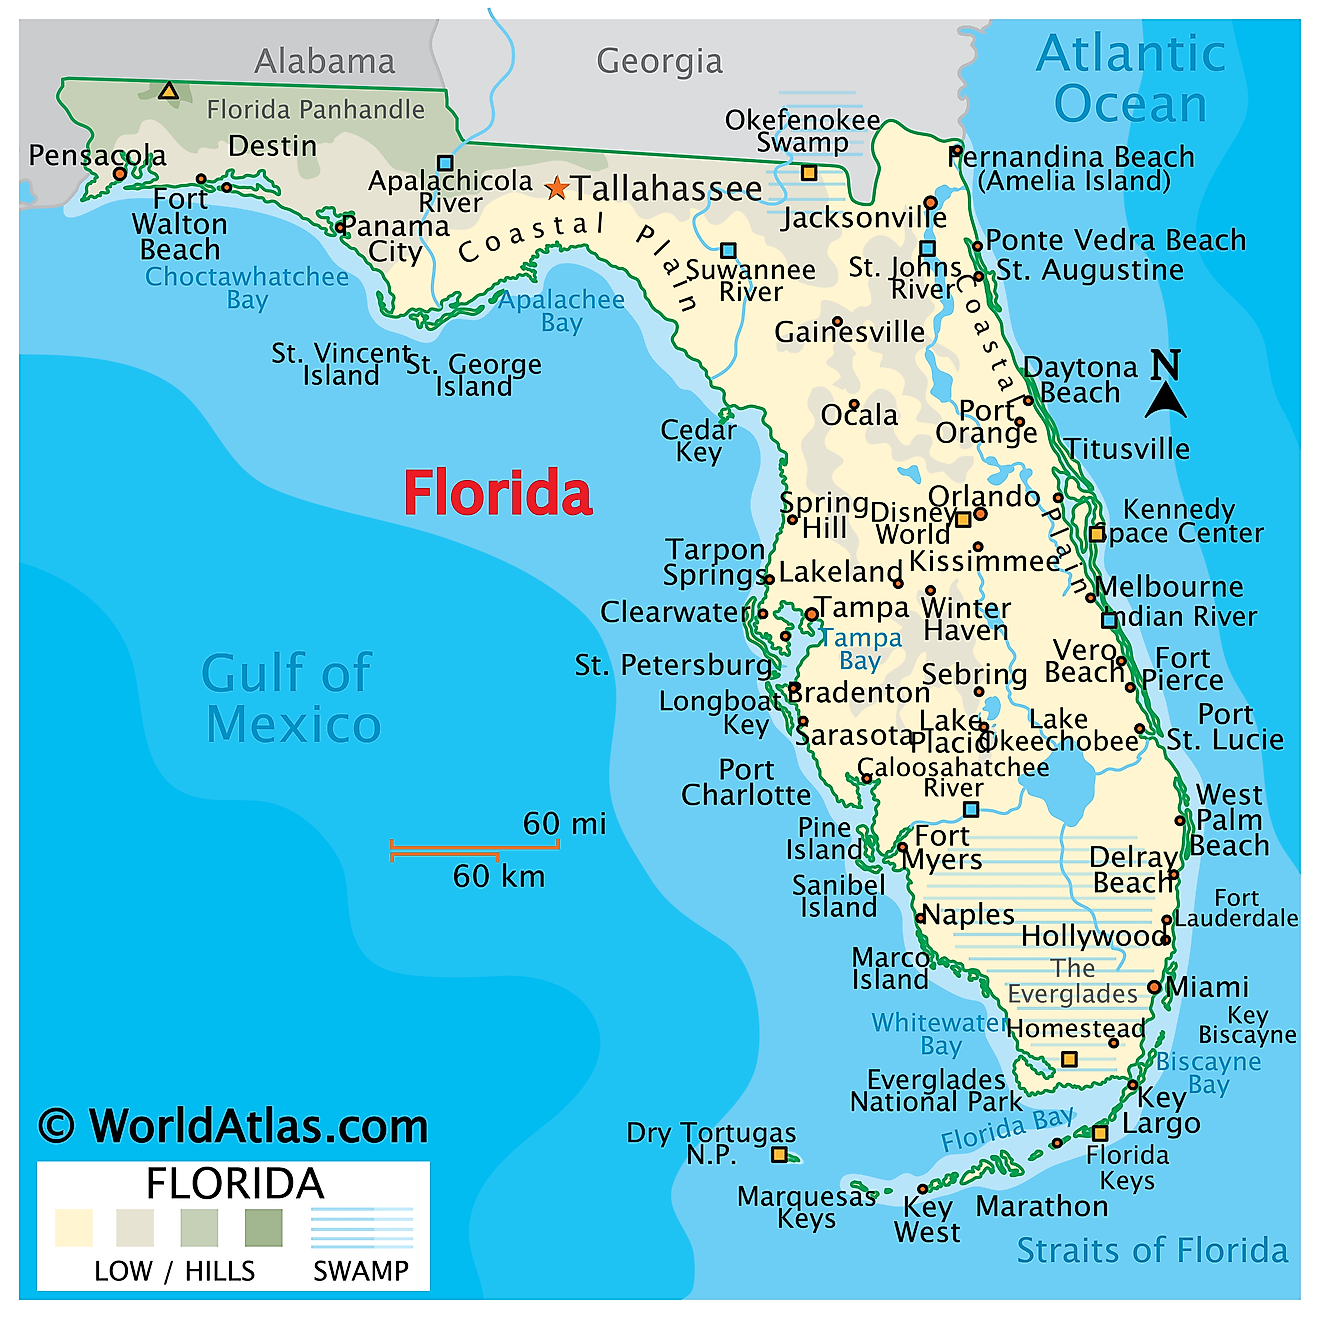 Florida Atlantic Ocean Map 